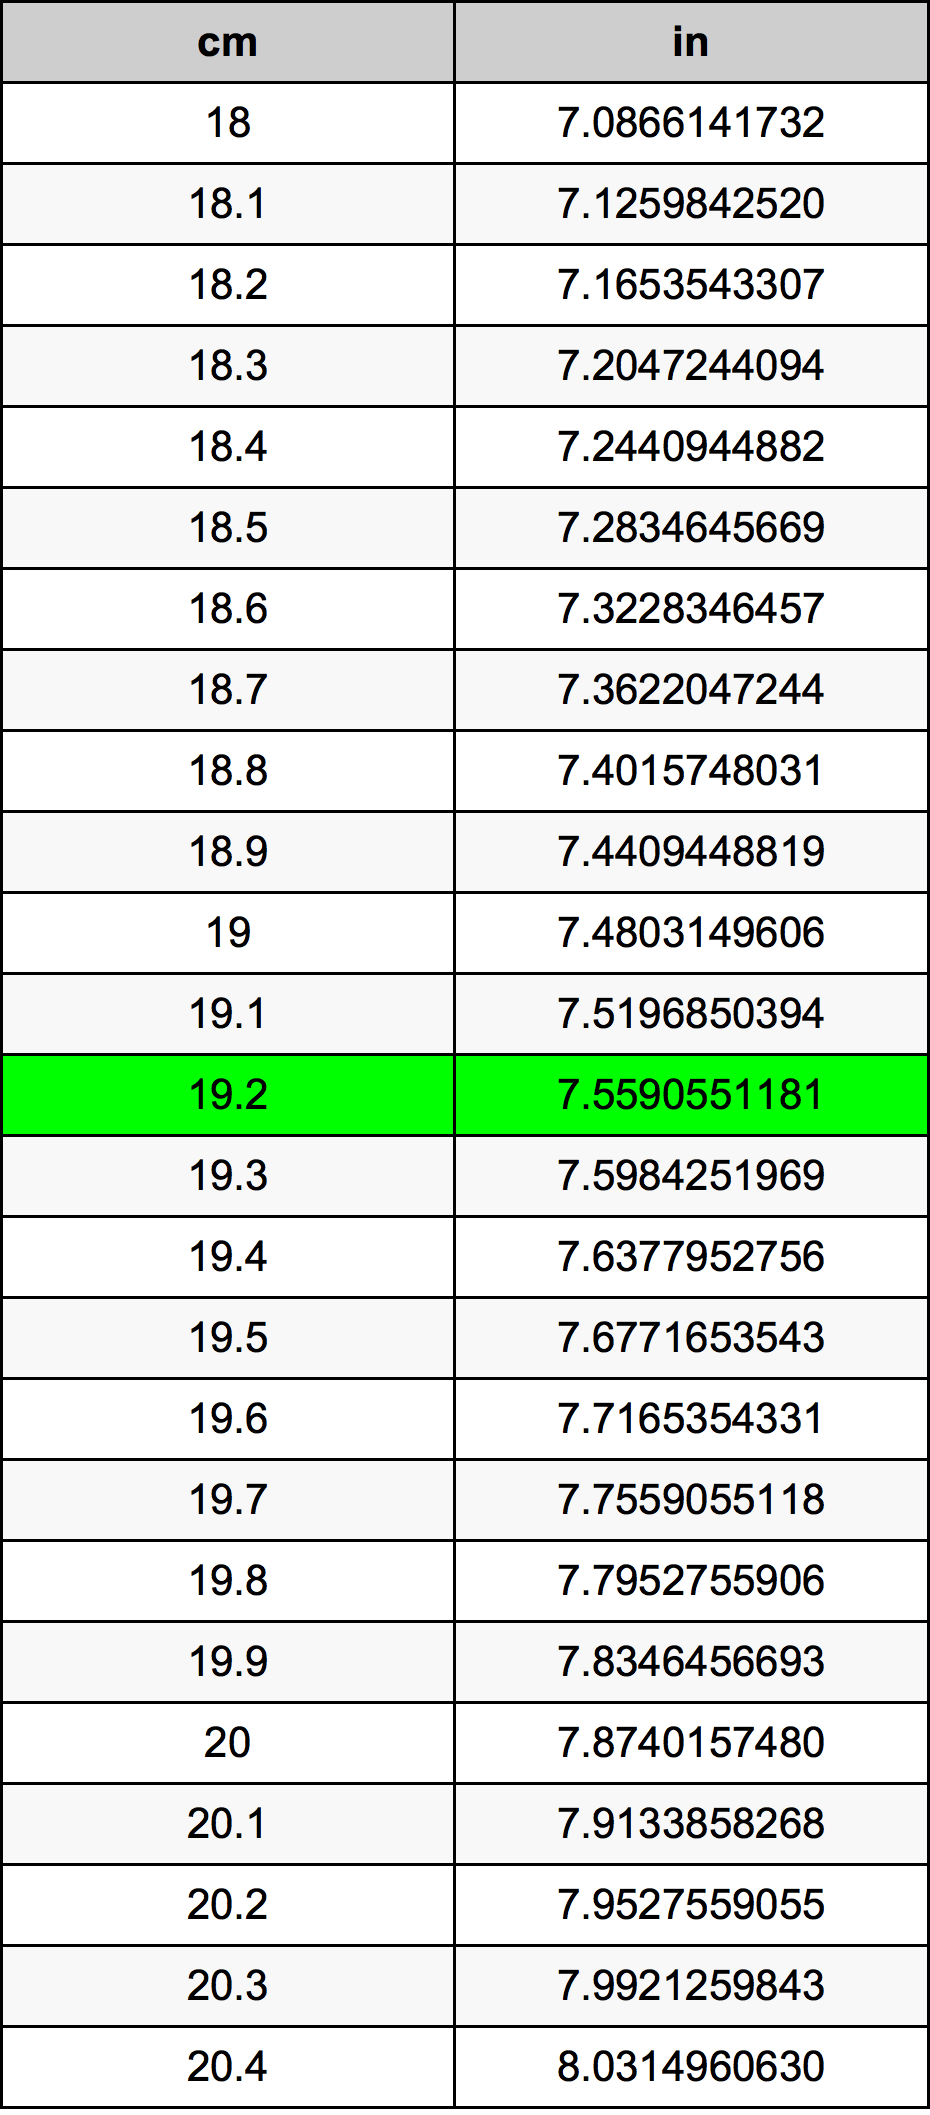 19.2 Centiméter átszámítási táblázat